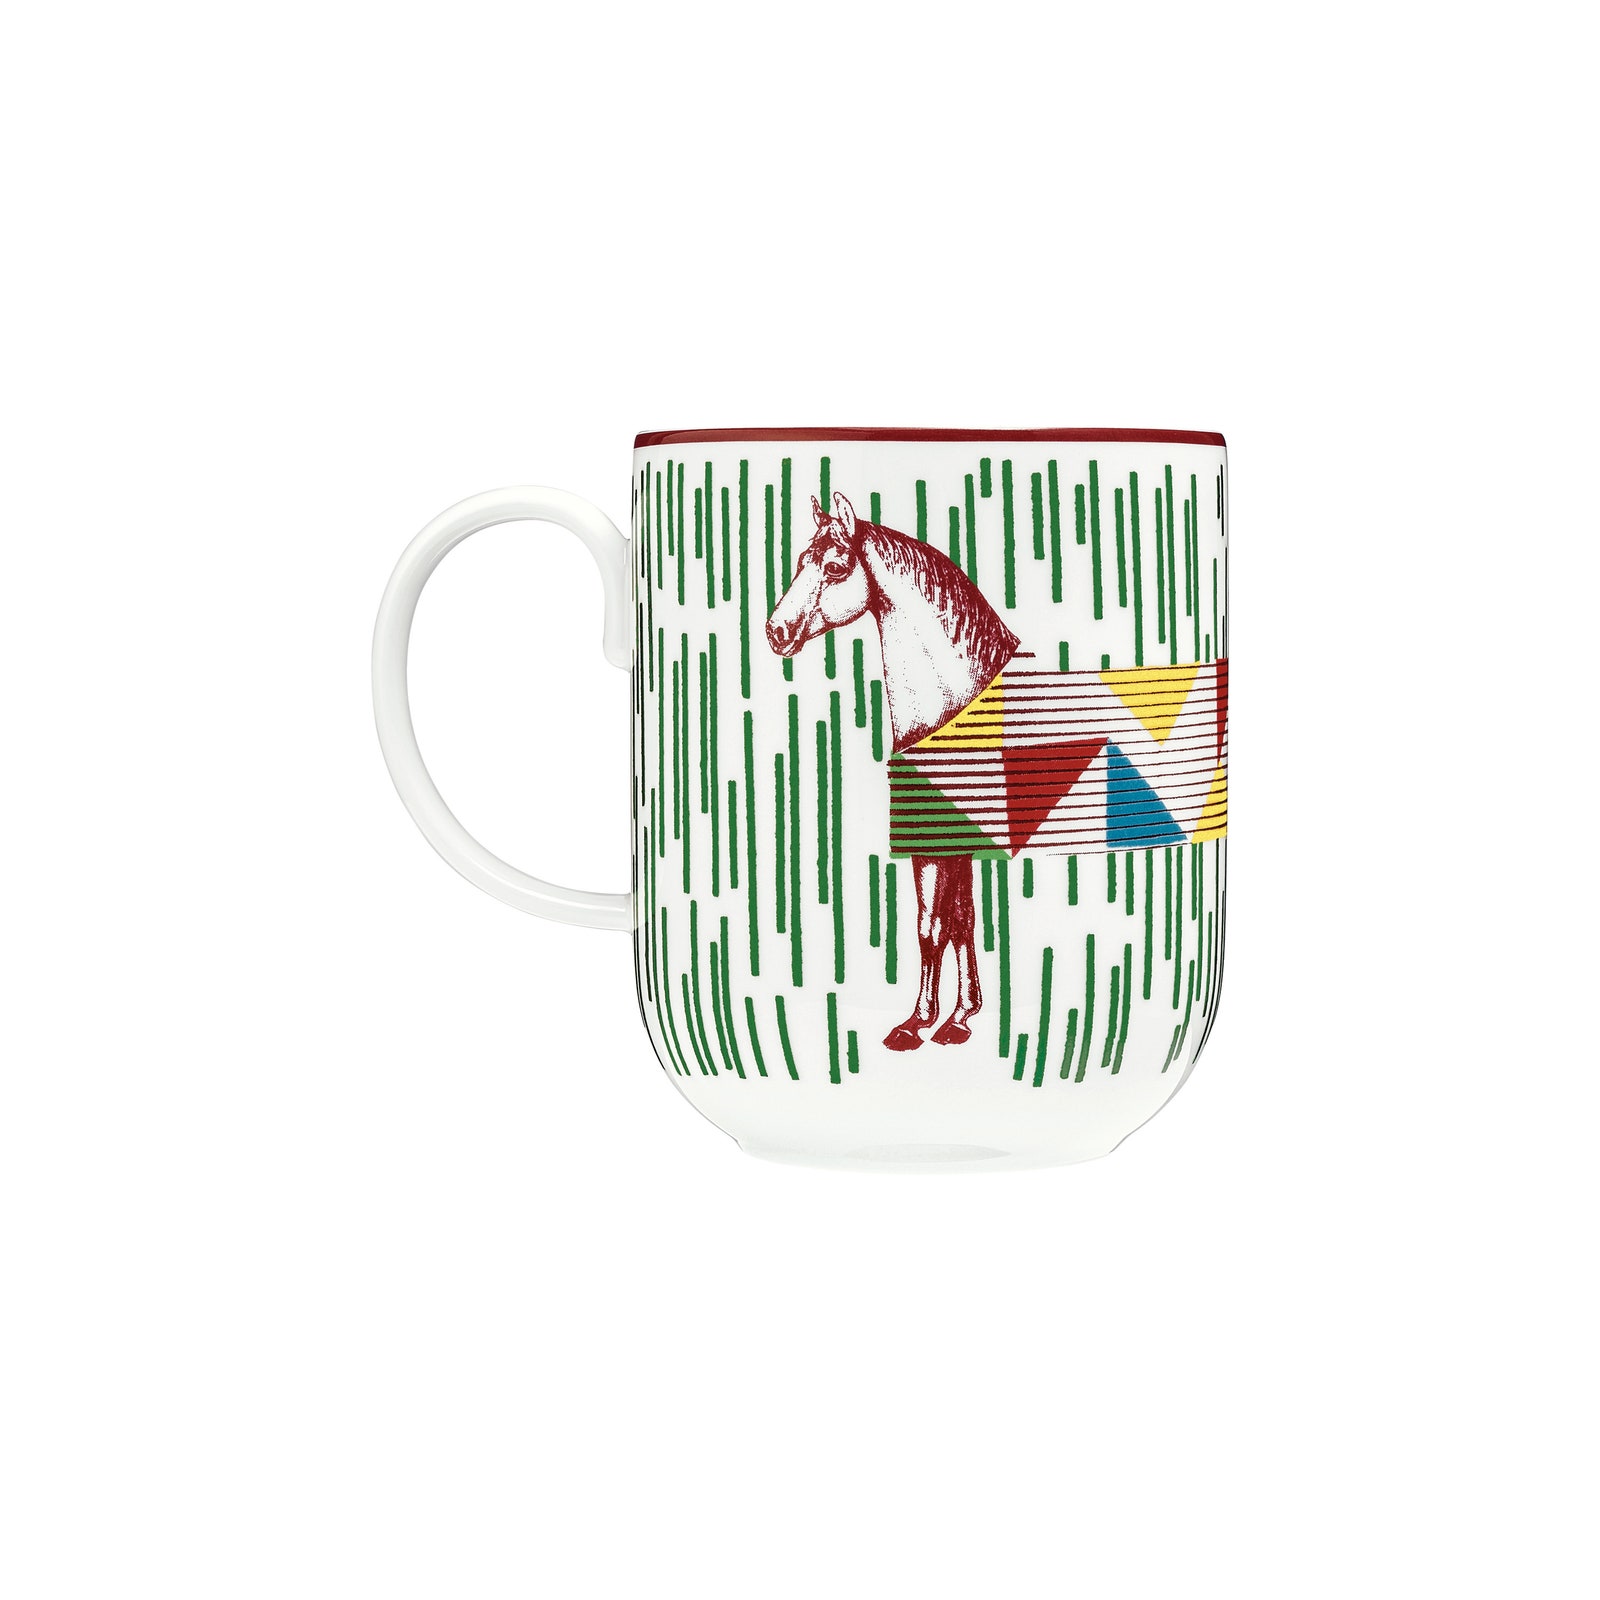 Кружки для чая или кофе. На них длинная лошадь помещается целиком.